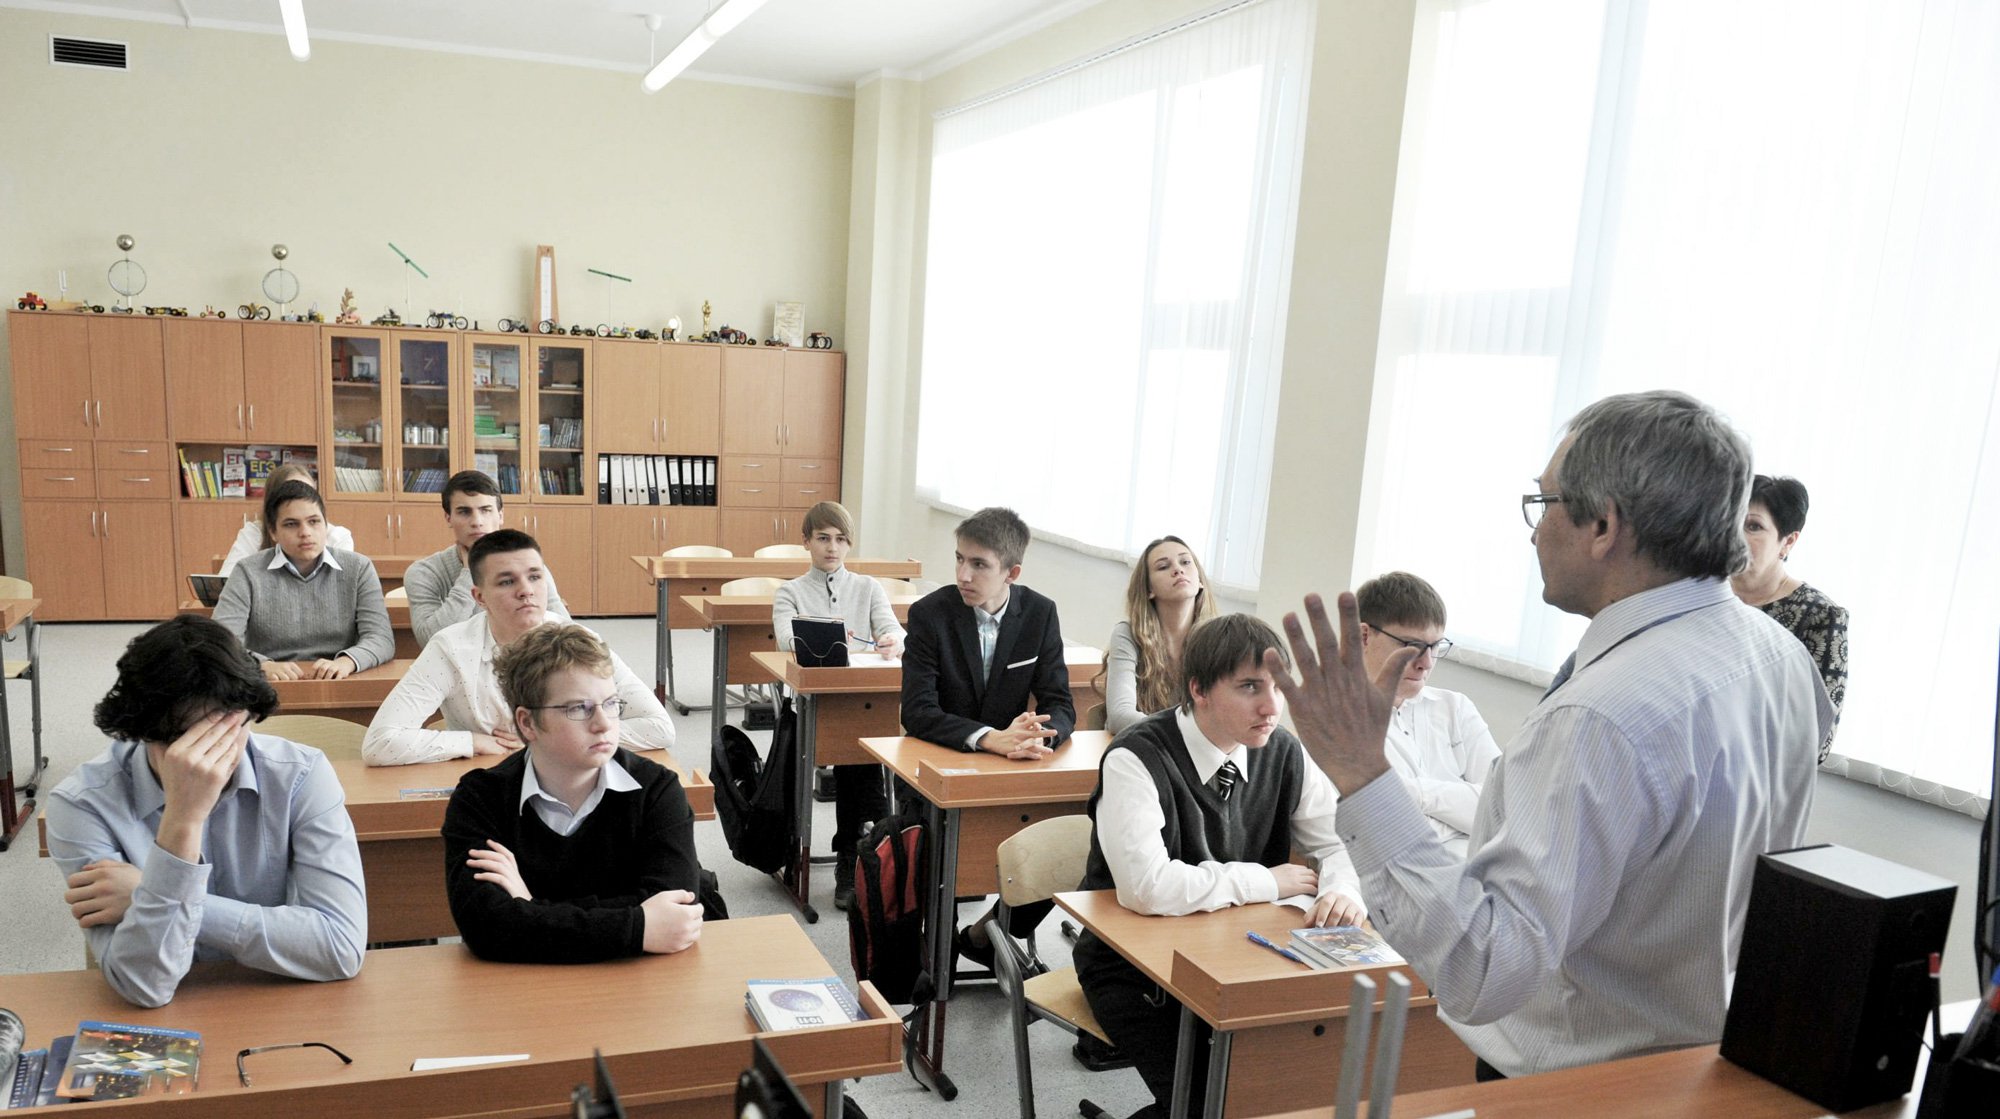 Dailystorm - Образование будущего: школьникам и студентам внедрят «уроки толерантности»?